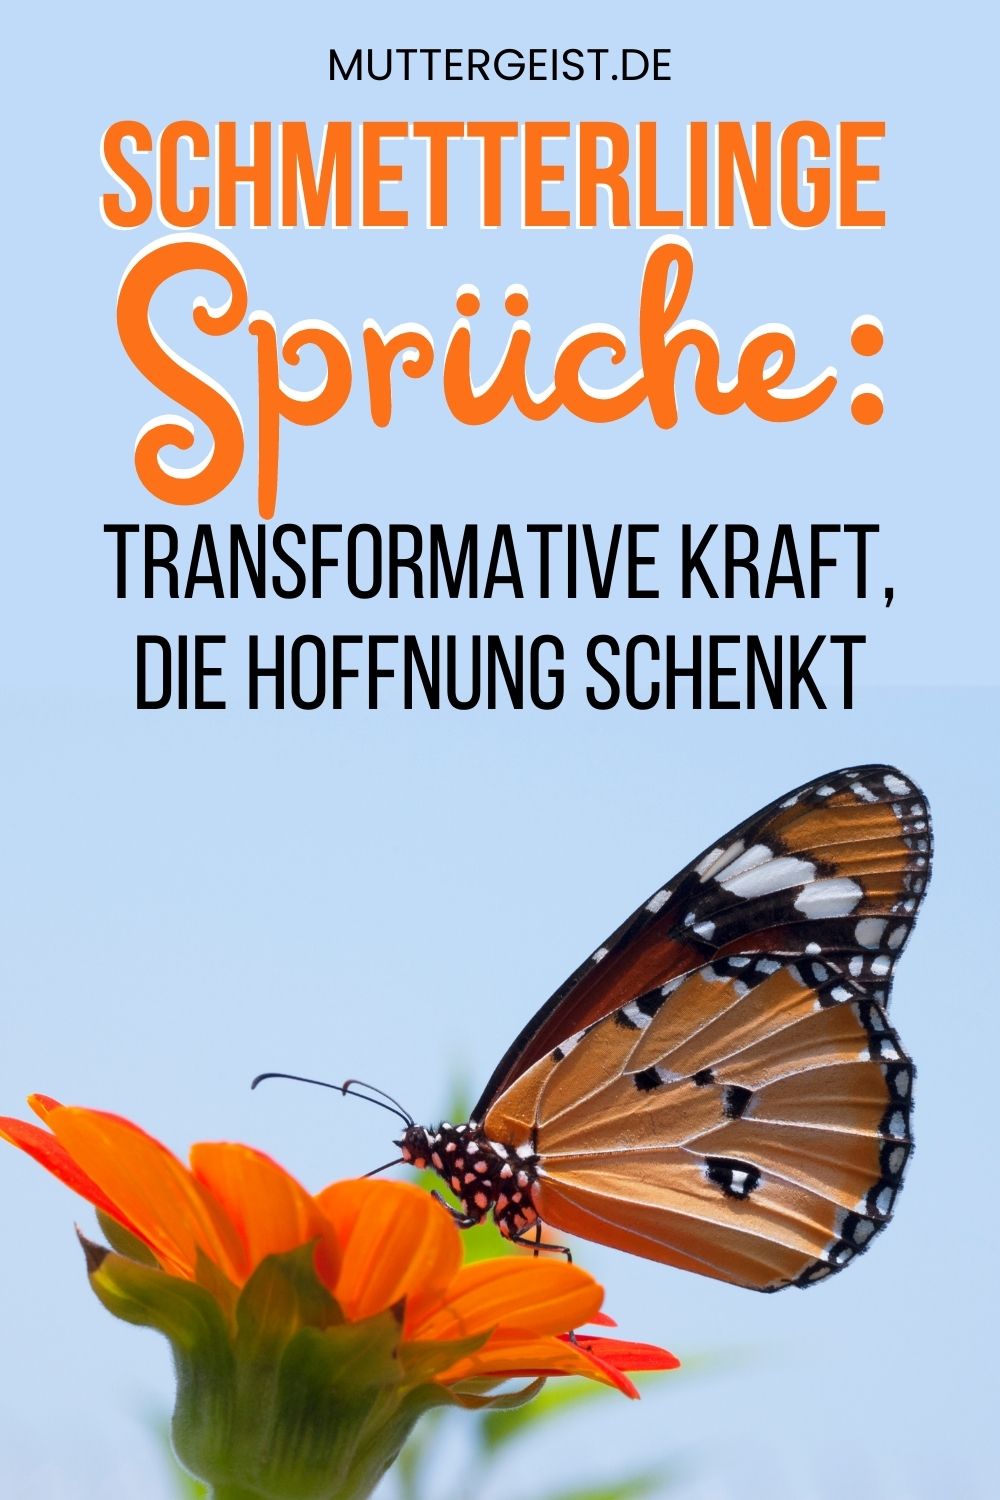 Schmetterlinge Sprüche – Transformative Kraft, die Hoffnung schenkt Pinterest